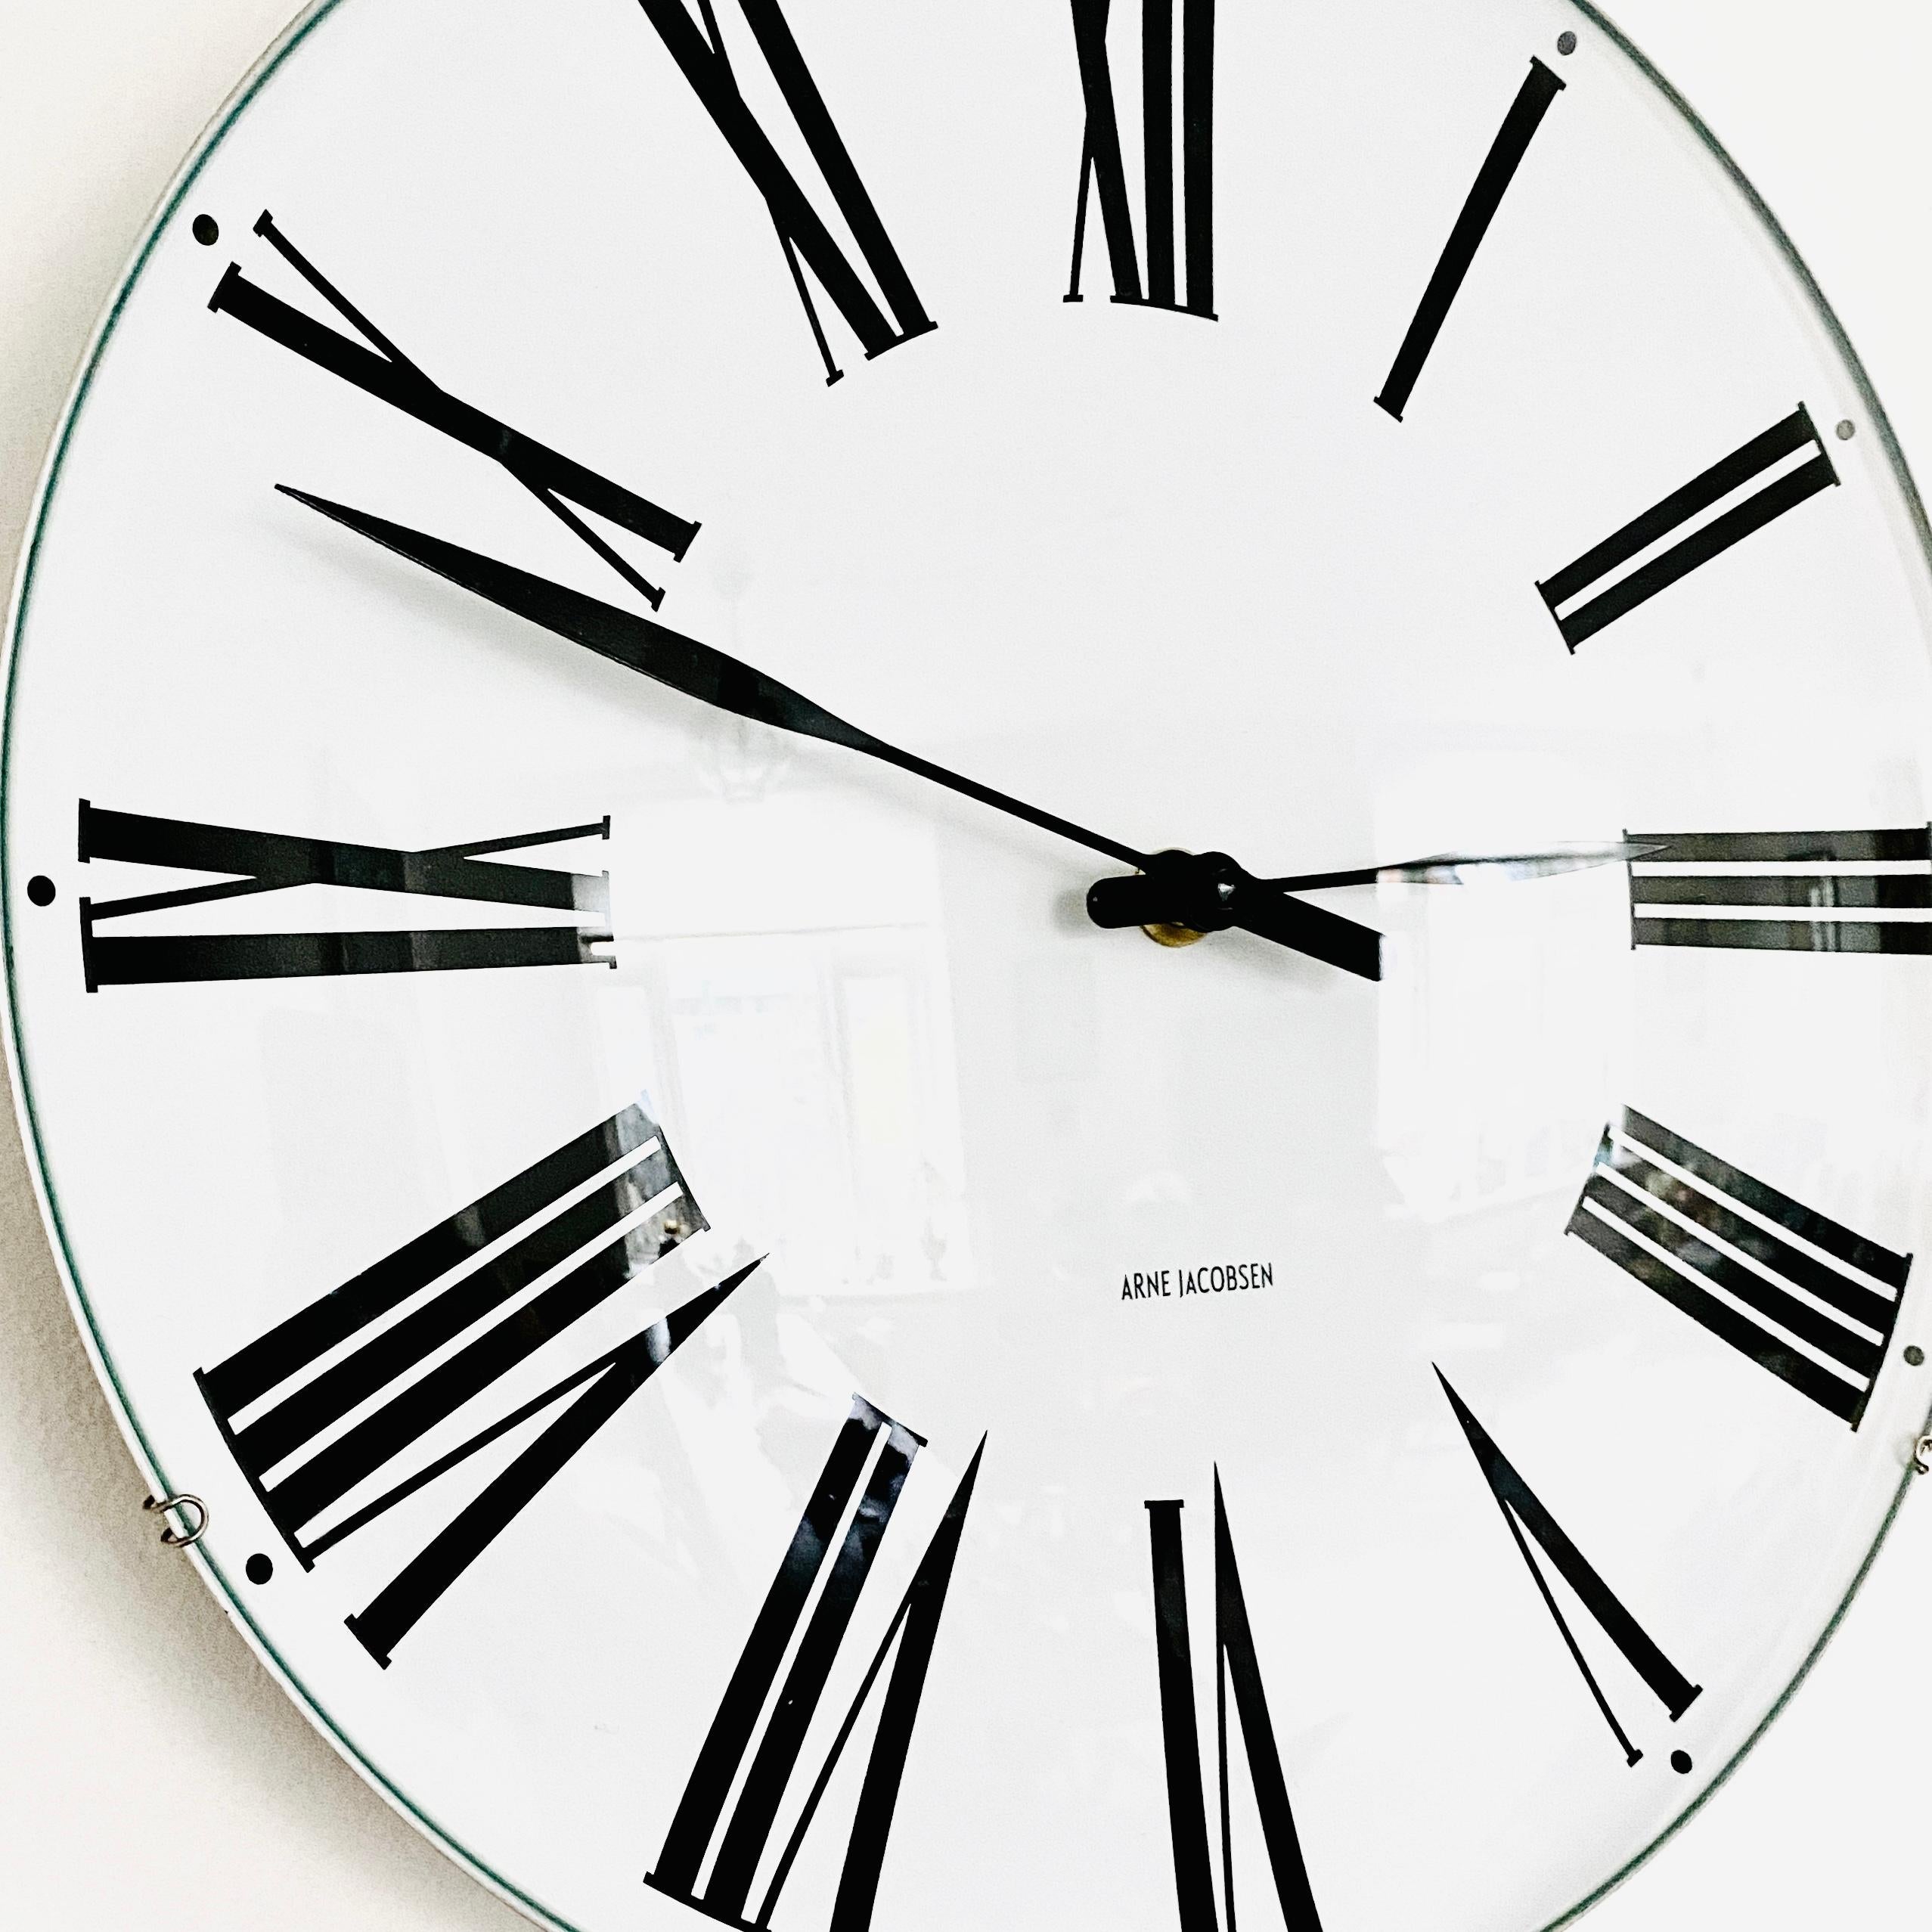 Horloge murale danoise du milieu du siècle par Arne Jacobsen modèle Roma avec horloge à quartz.

Arne Jacobsen pour Rosendahl. Horloge murale en acier avec cadran blanc et chiffres romains noirs, aiguilles des heures et des minutes. Ce modèle mesure